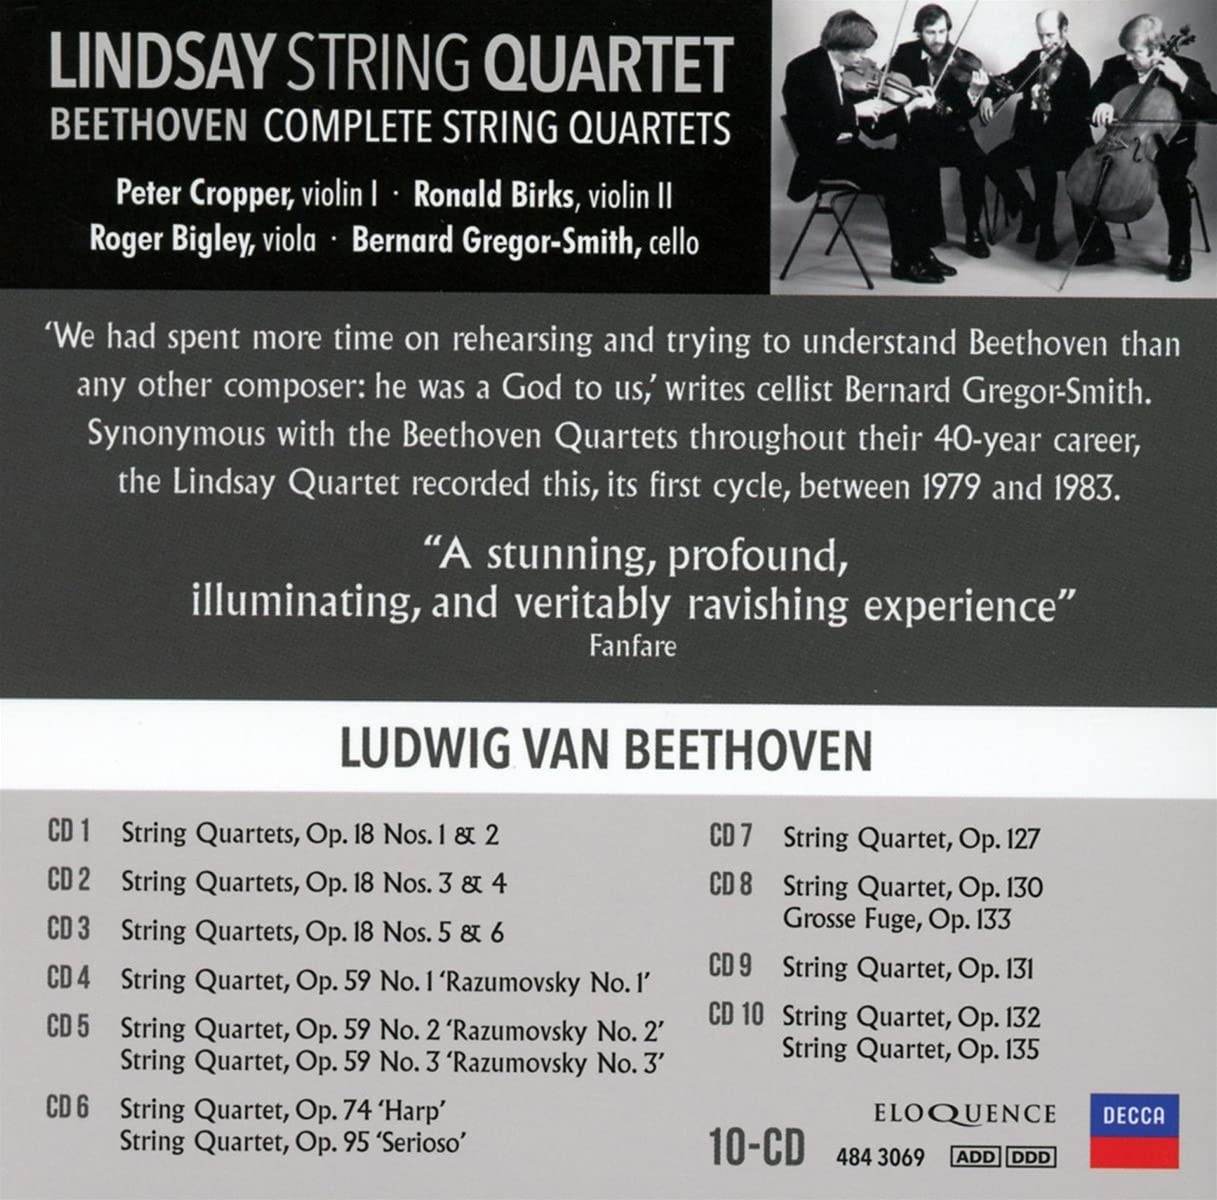 Lindsay String Quartet 베토벤: 현악 사중주 전곡 (Beethoven: Complete String Quartets) 